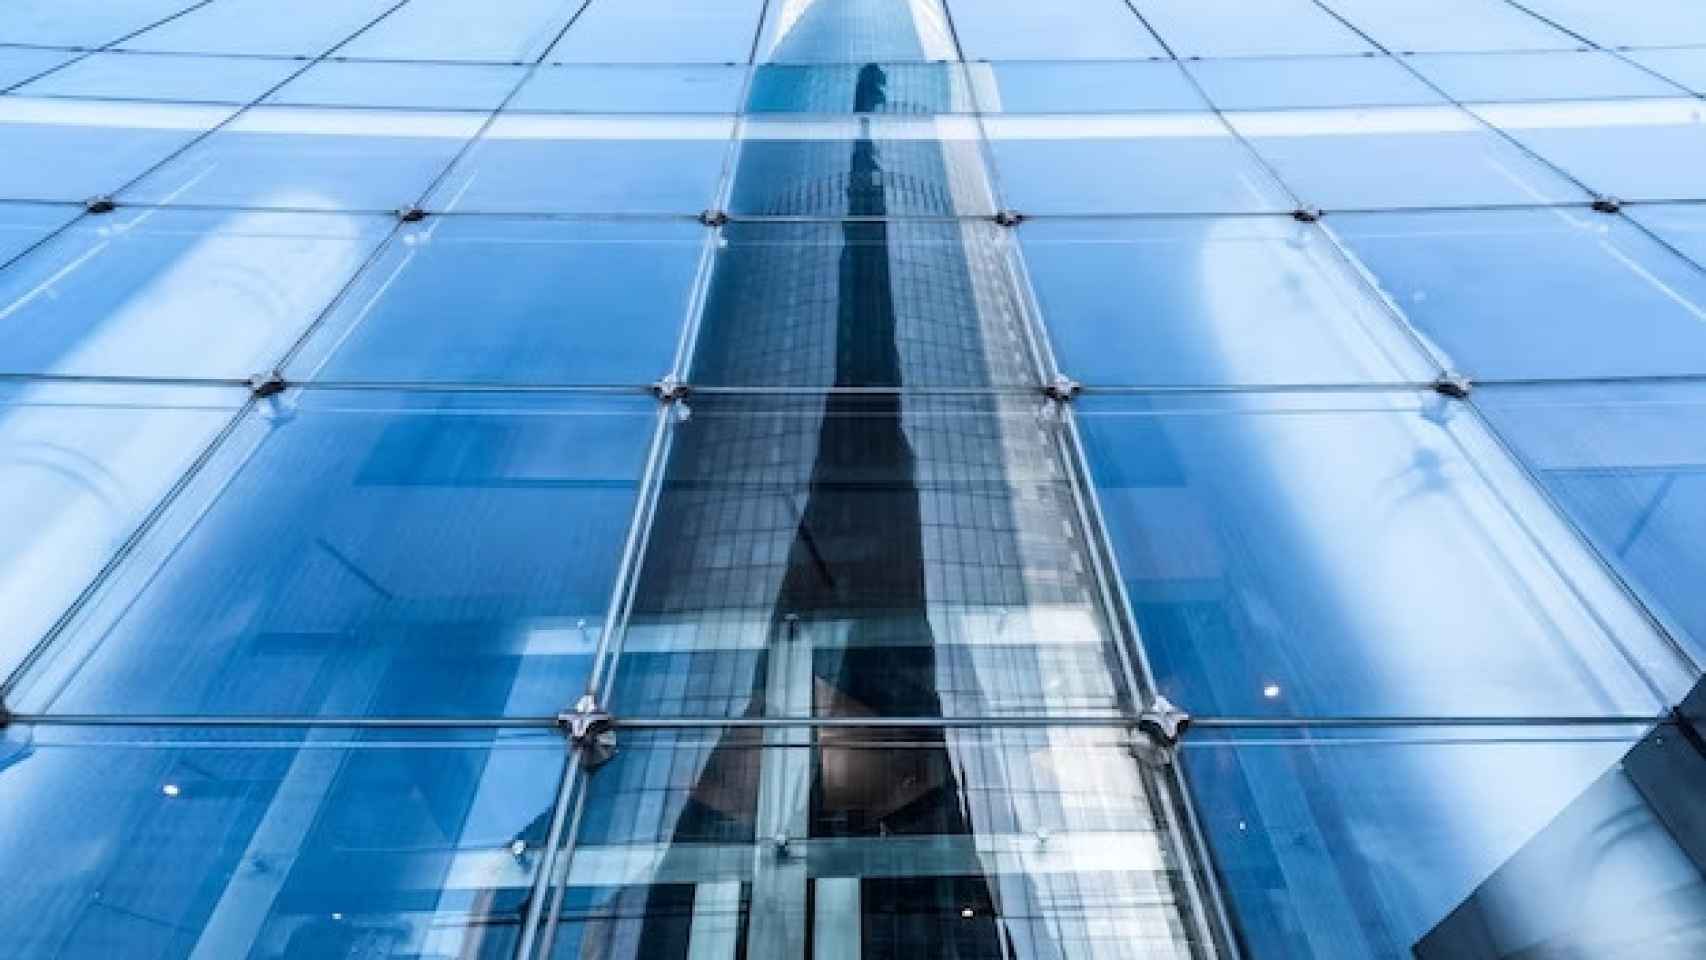 Imagen de los cristales de la fachada de un edificio